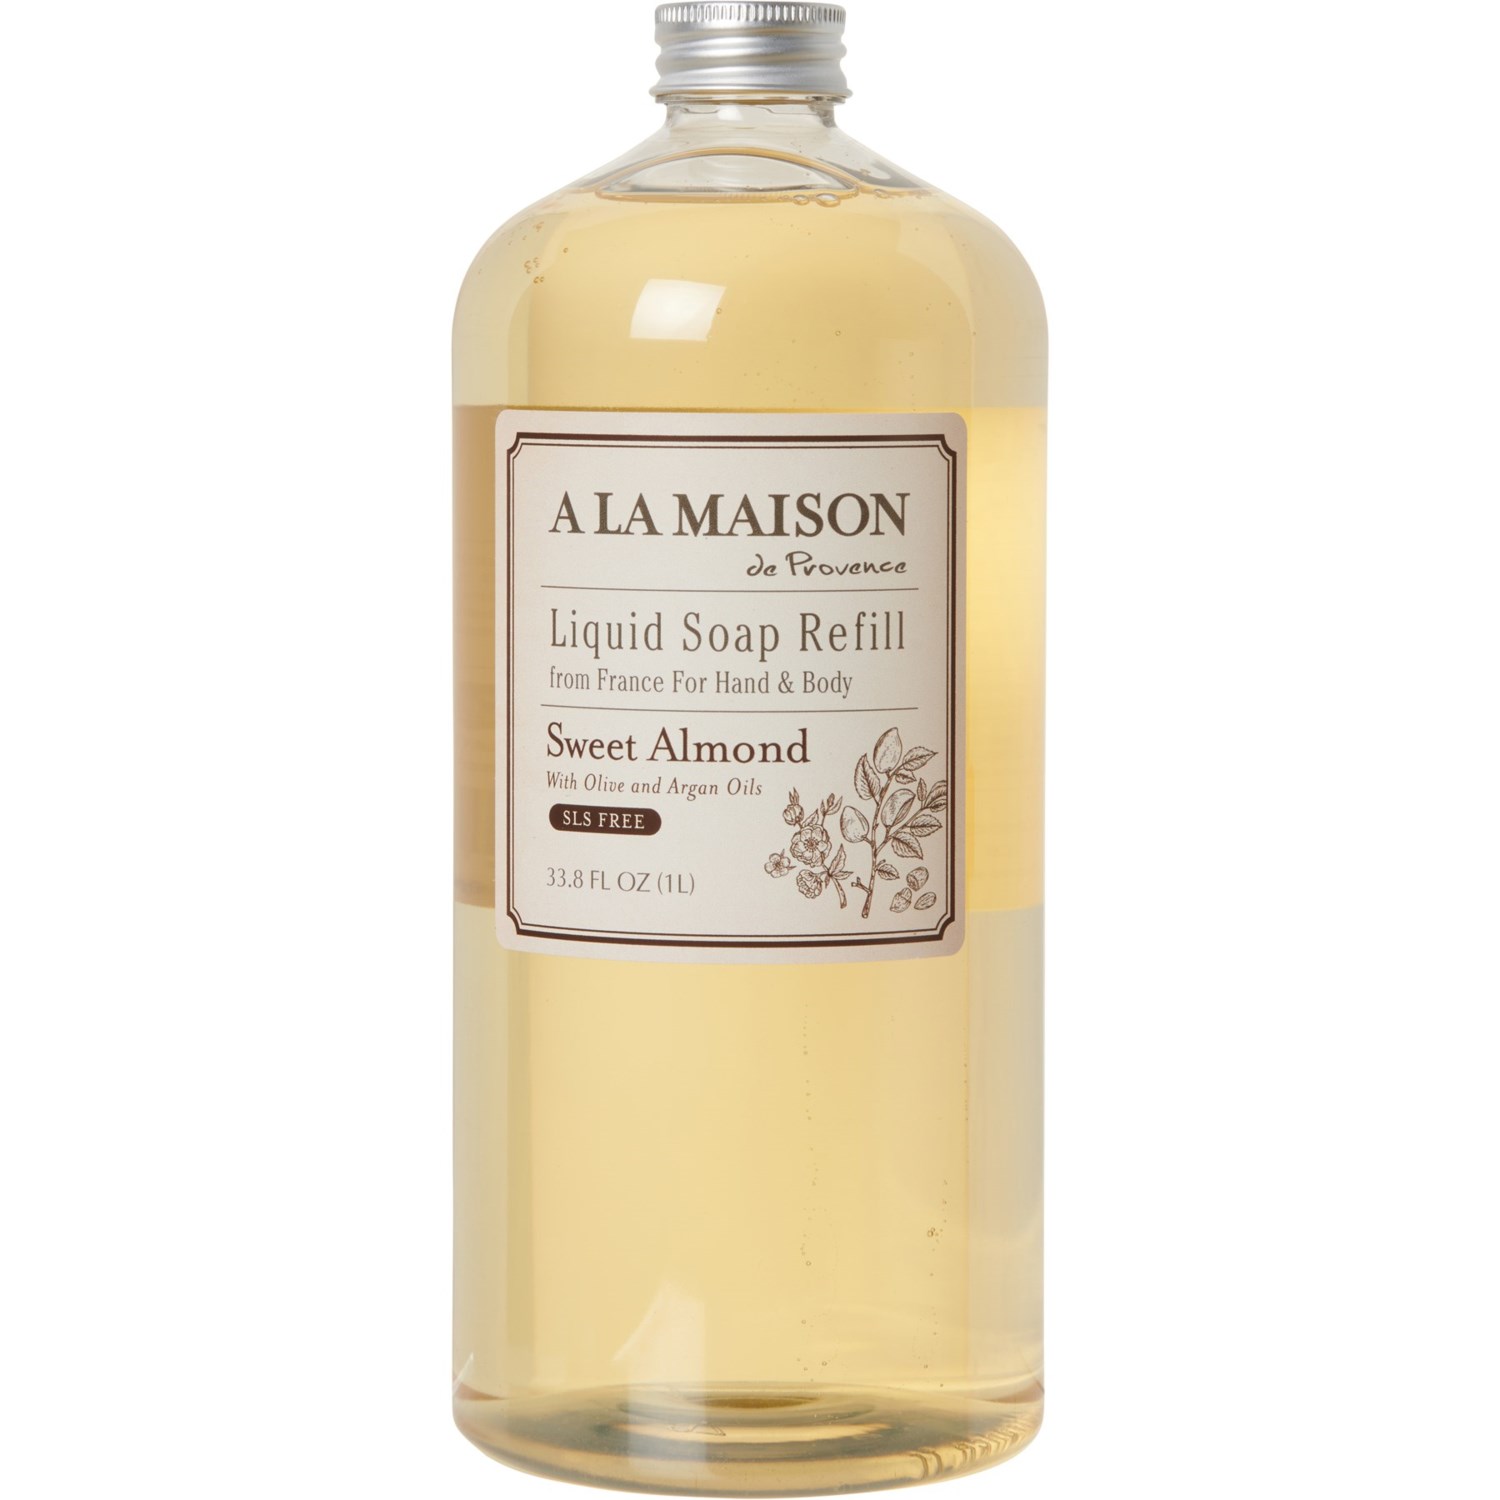 A La Maison Liquid Hand and Body Soap Refill - 33.8 oz.